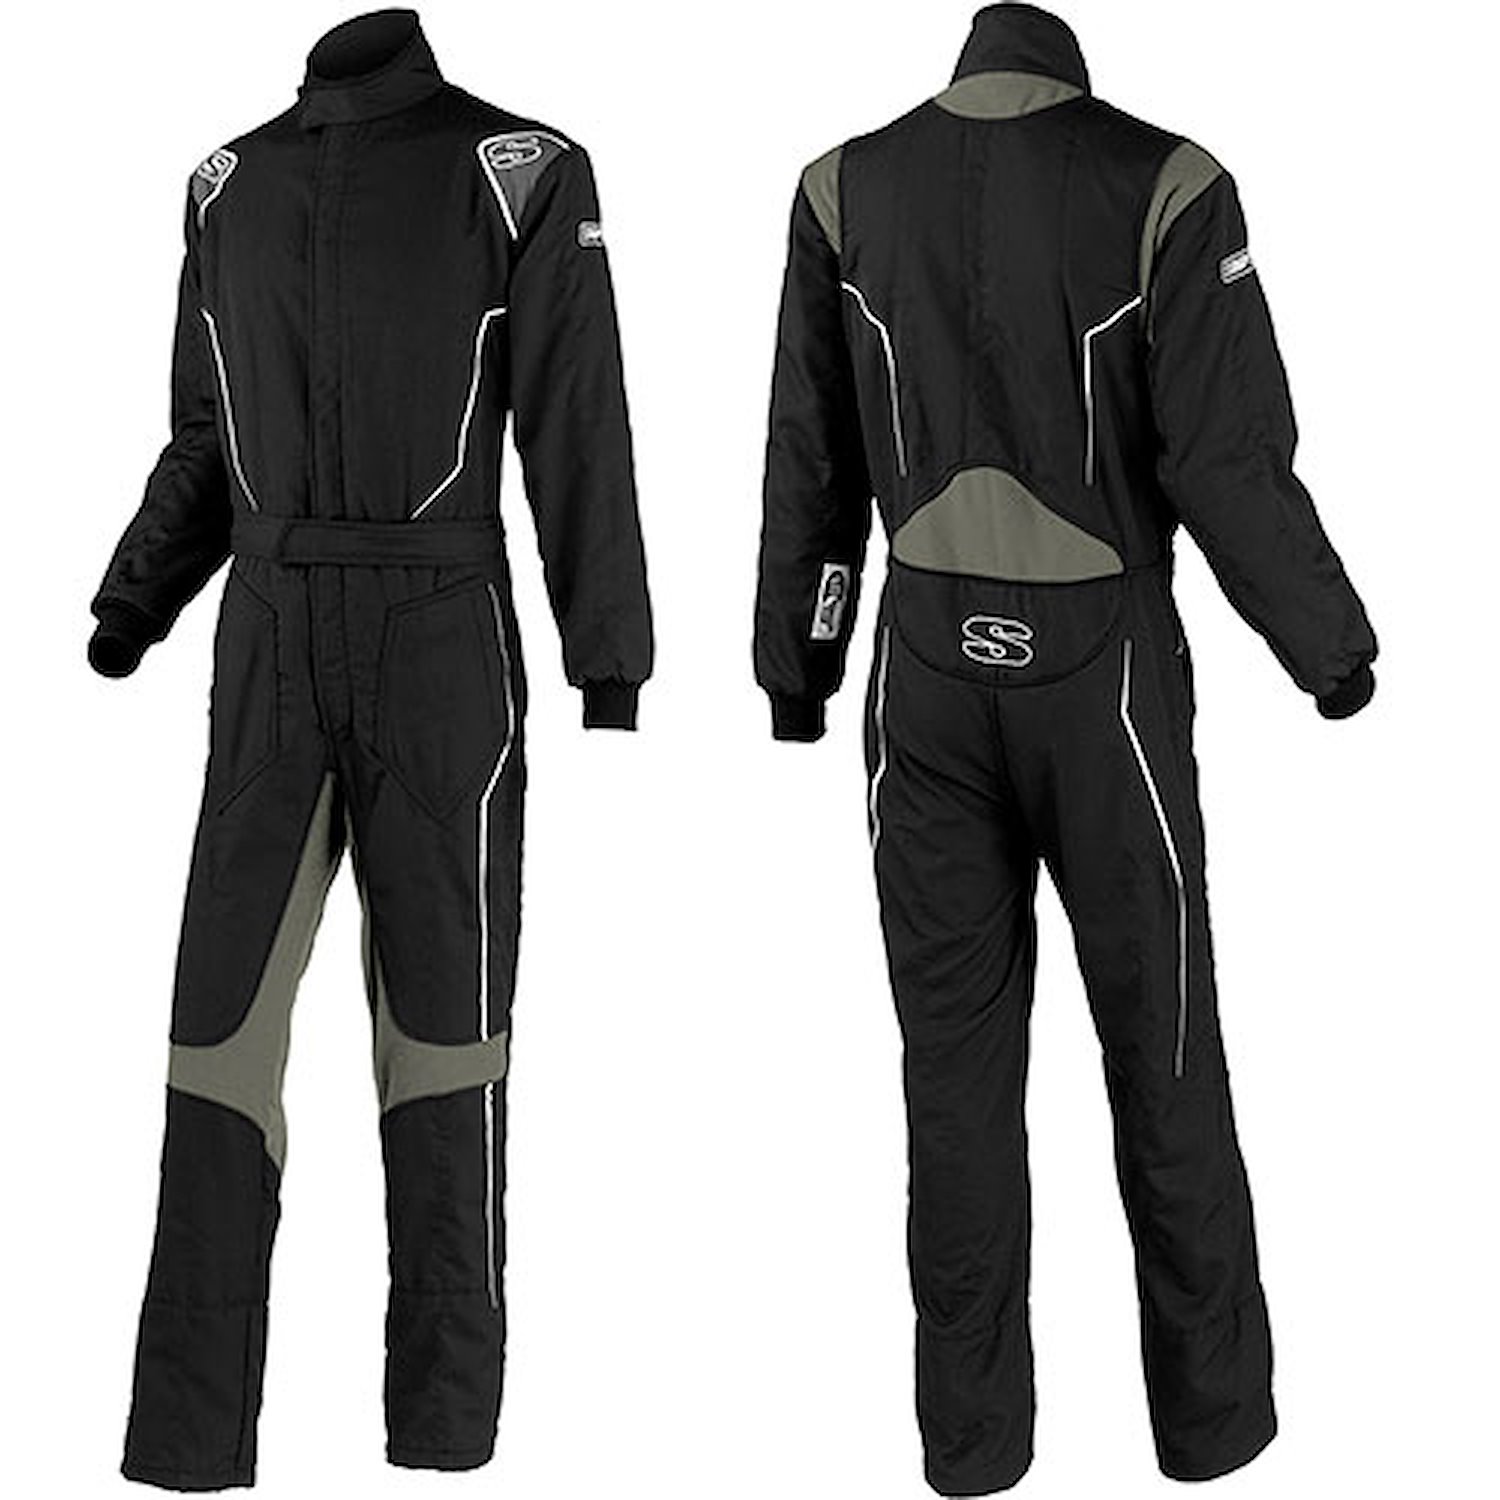 Helix Racing Suit Medium